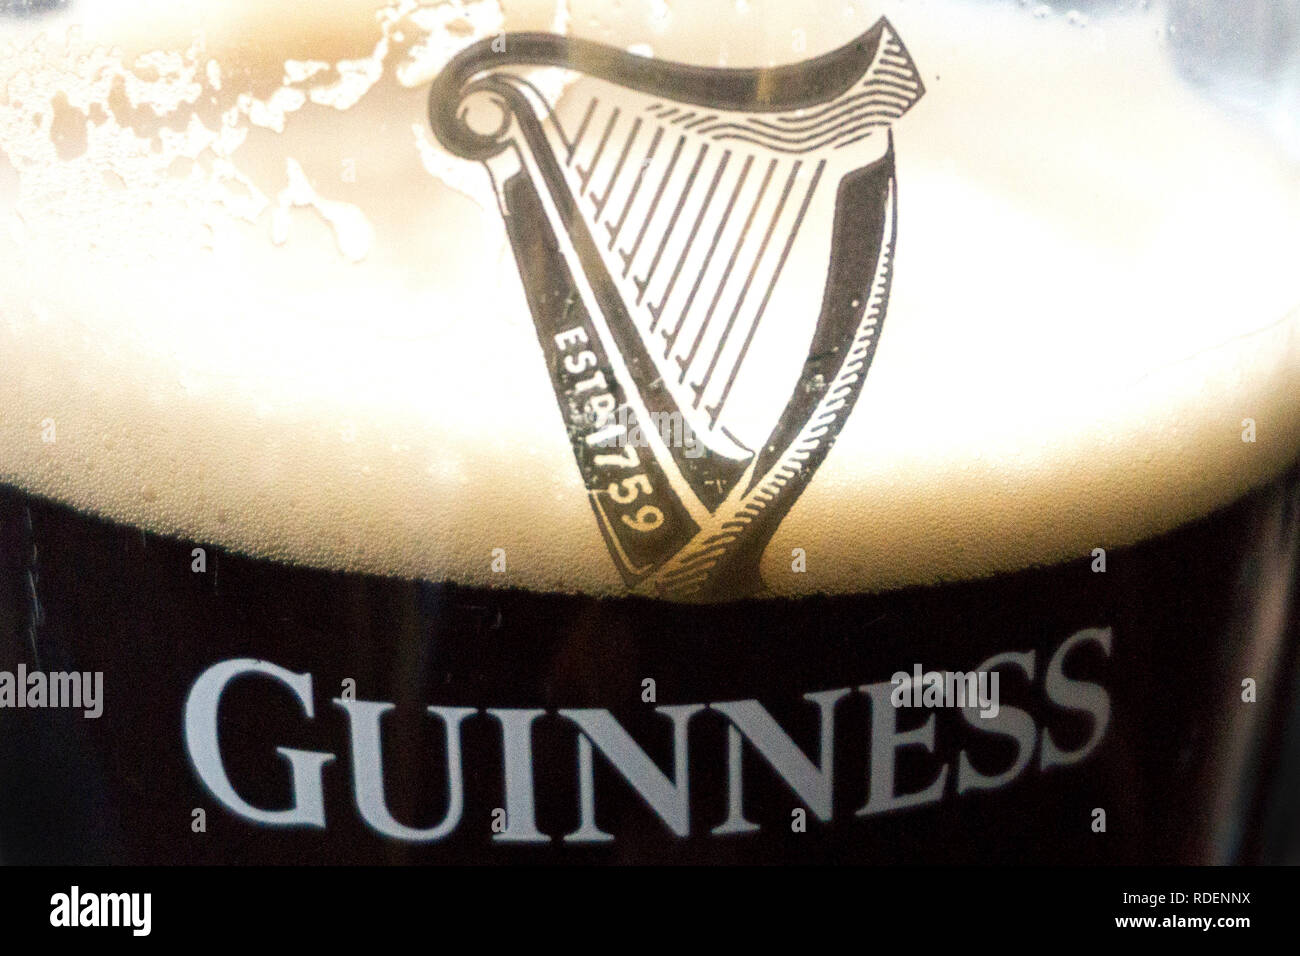 La Gravity Bar presso il Magazzino Guinness Brewery a Dublino, Irlanda, 15 gen 2019. Foto Stock